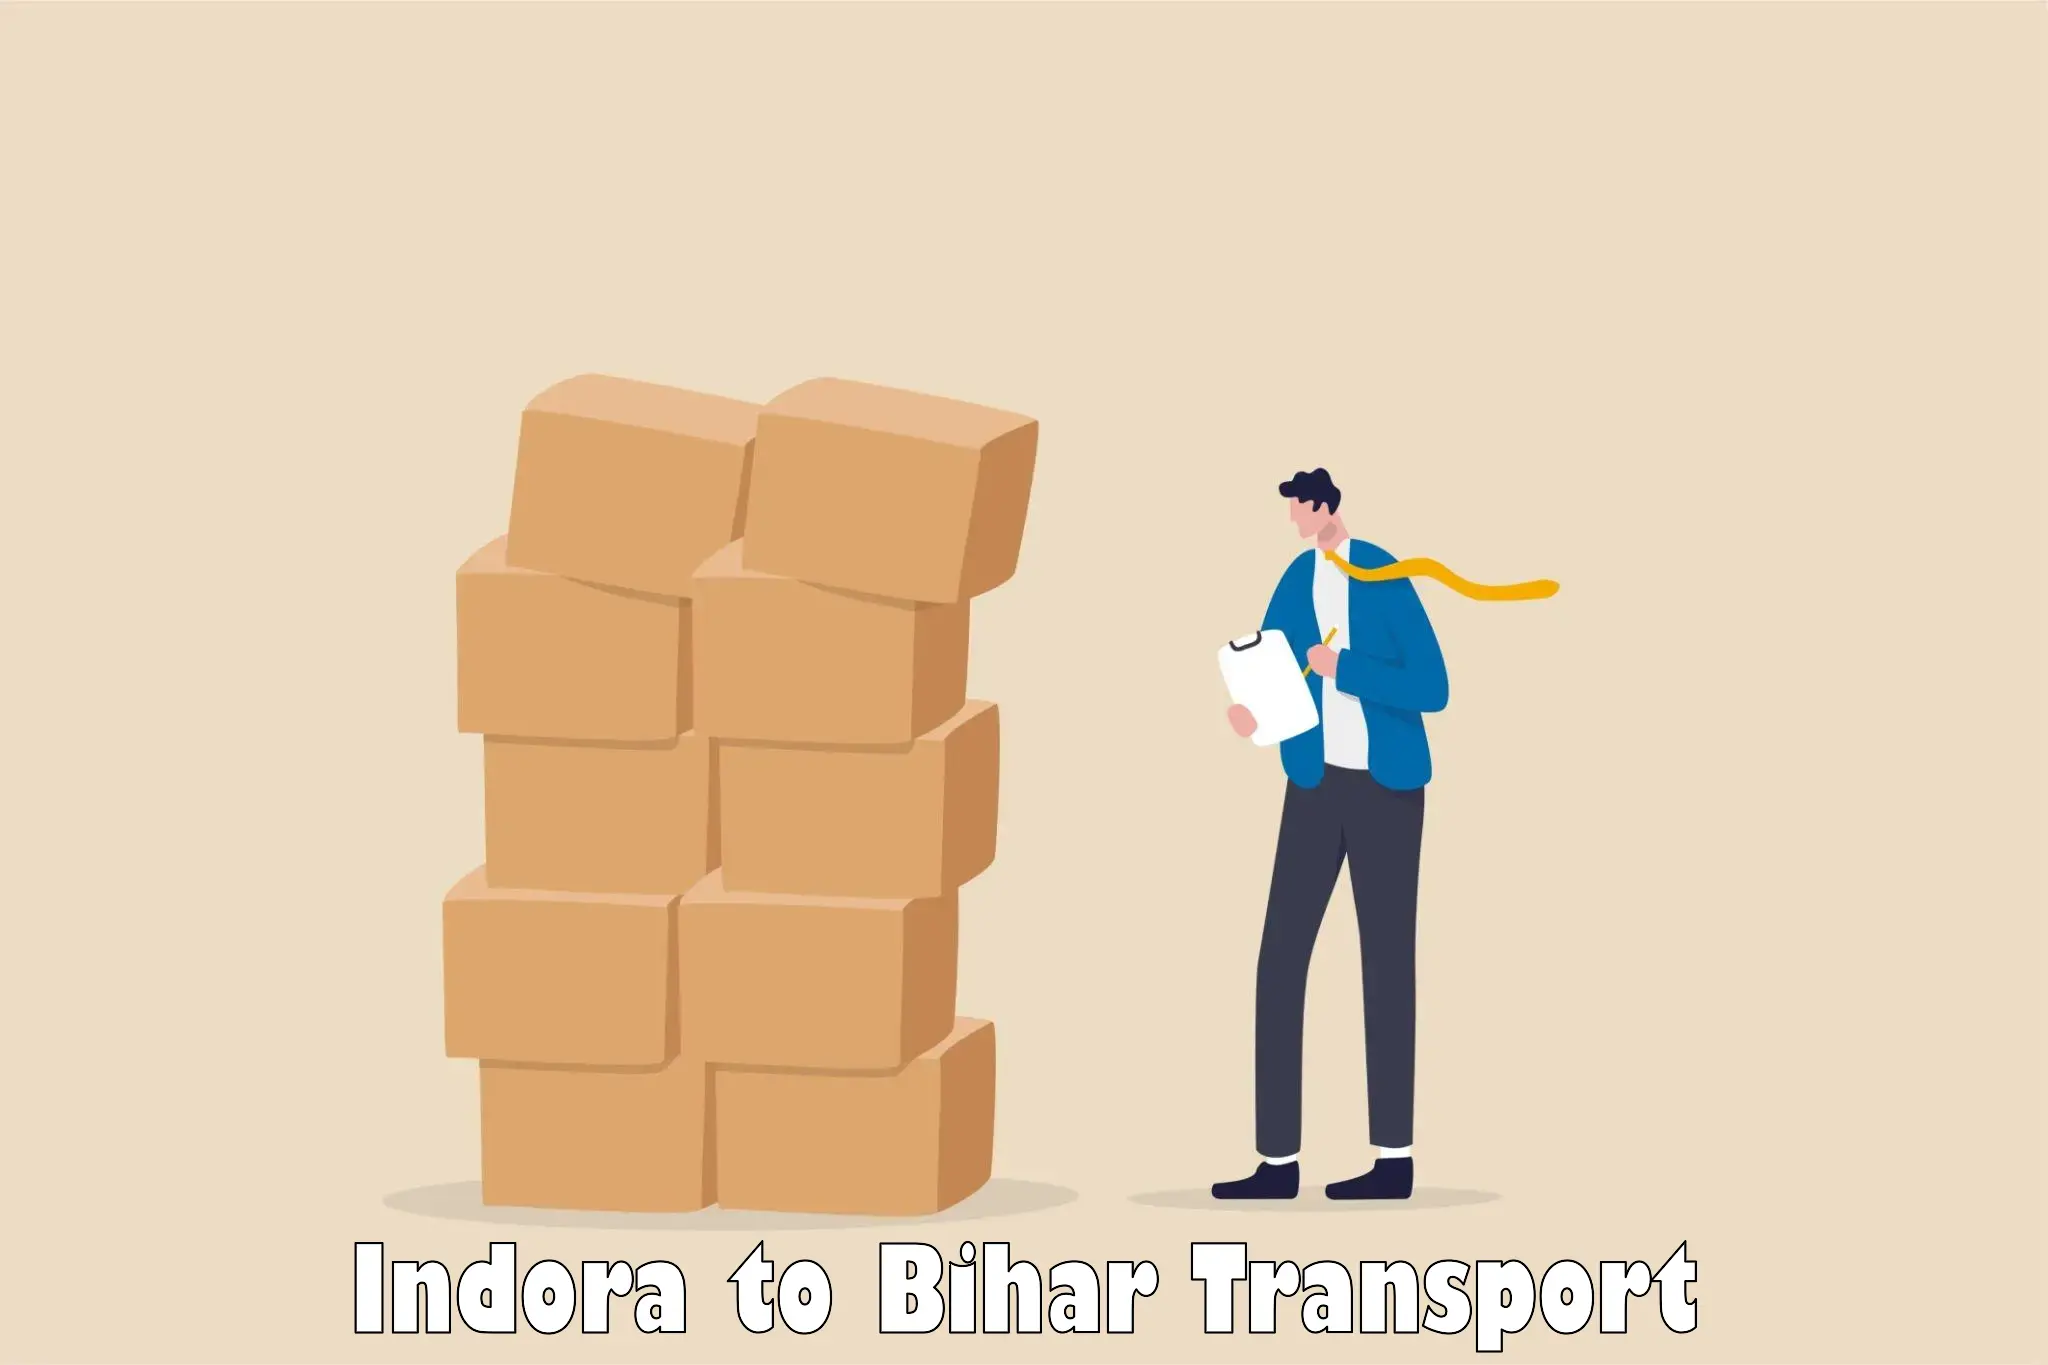 India truck logistics services Indora to Sugauna